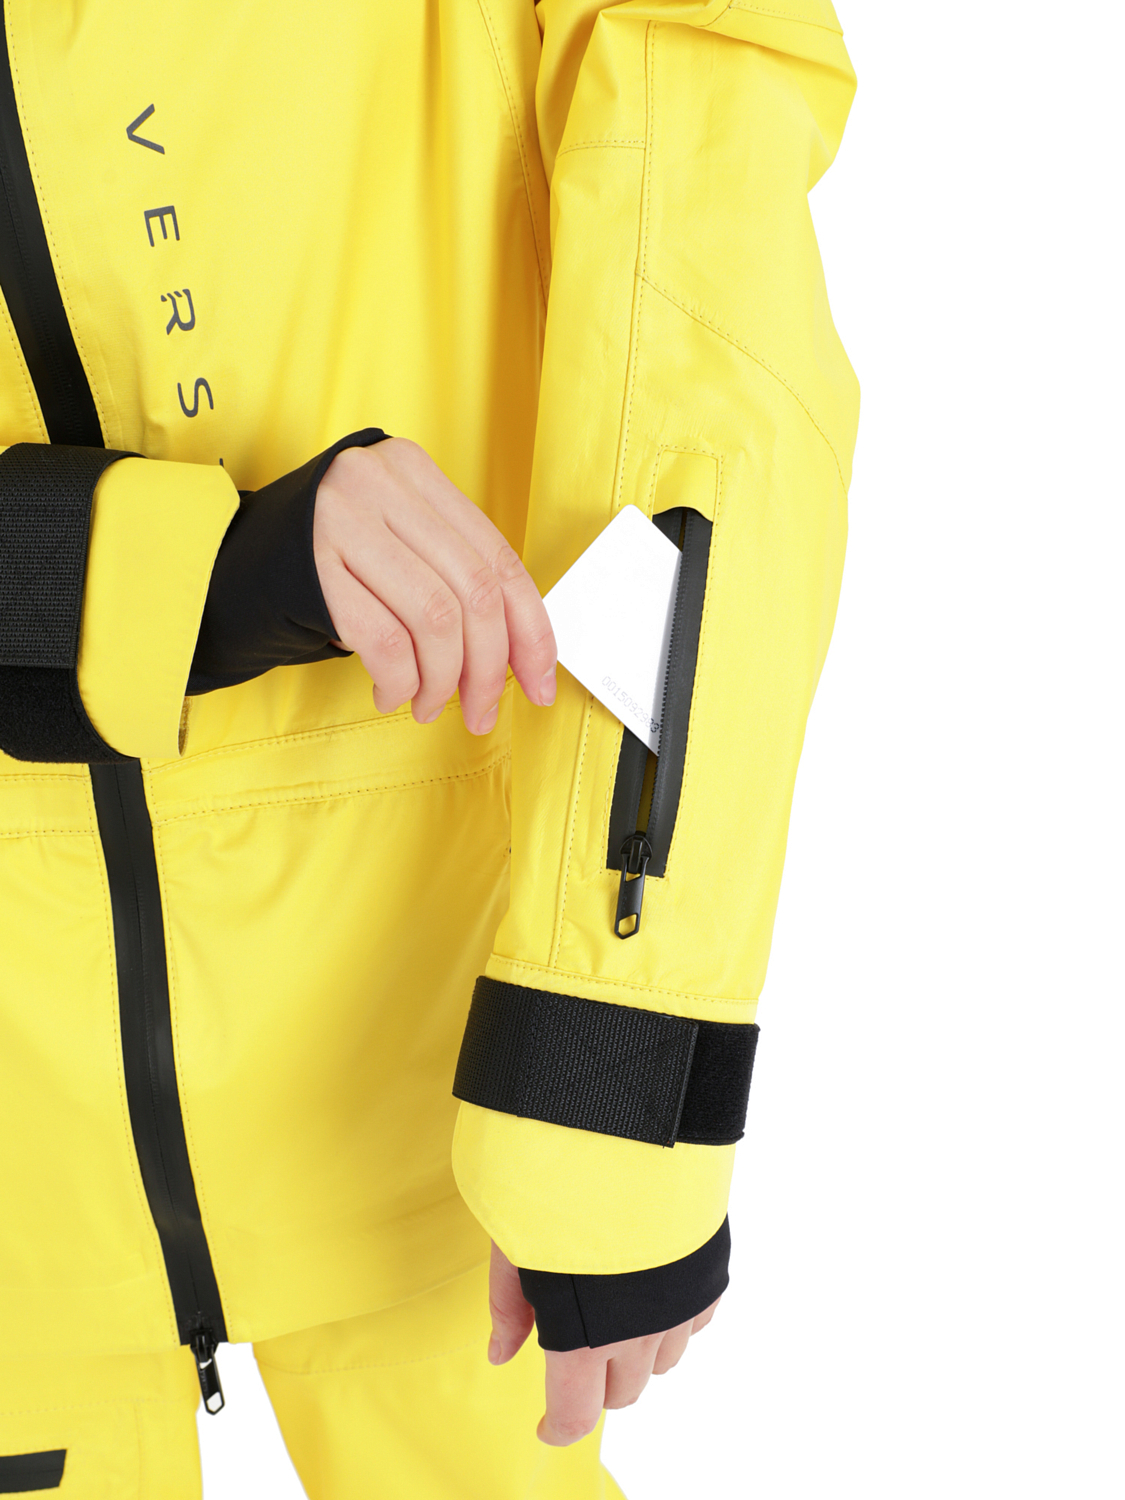 Куртка сноубордическая Versta Rider Collection Woman Yellow